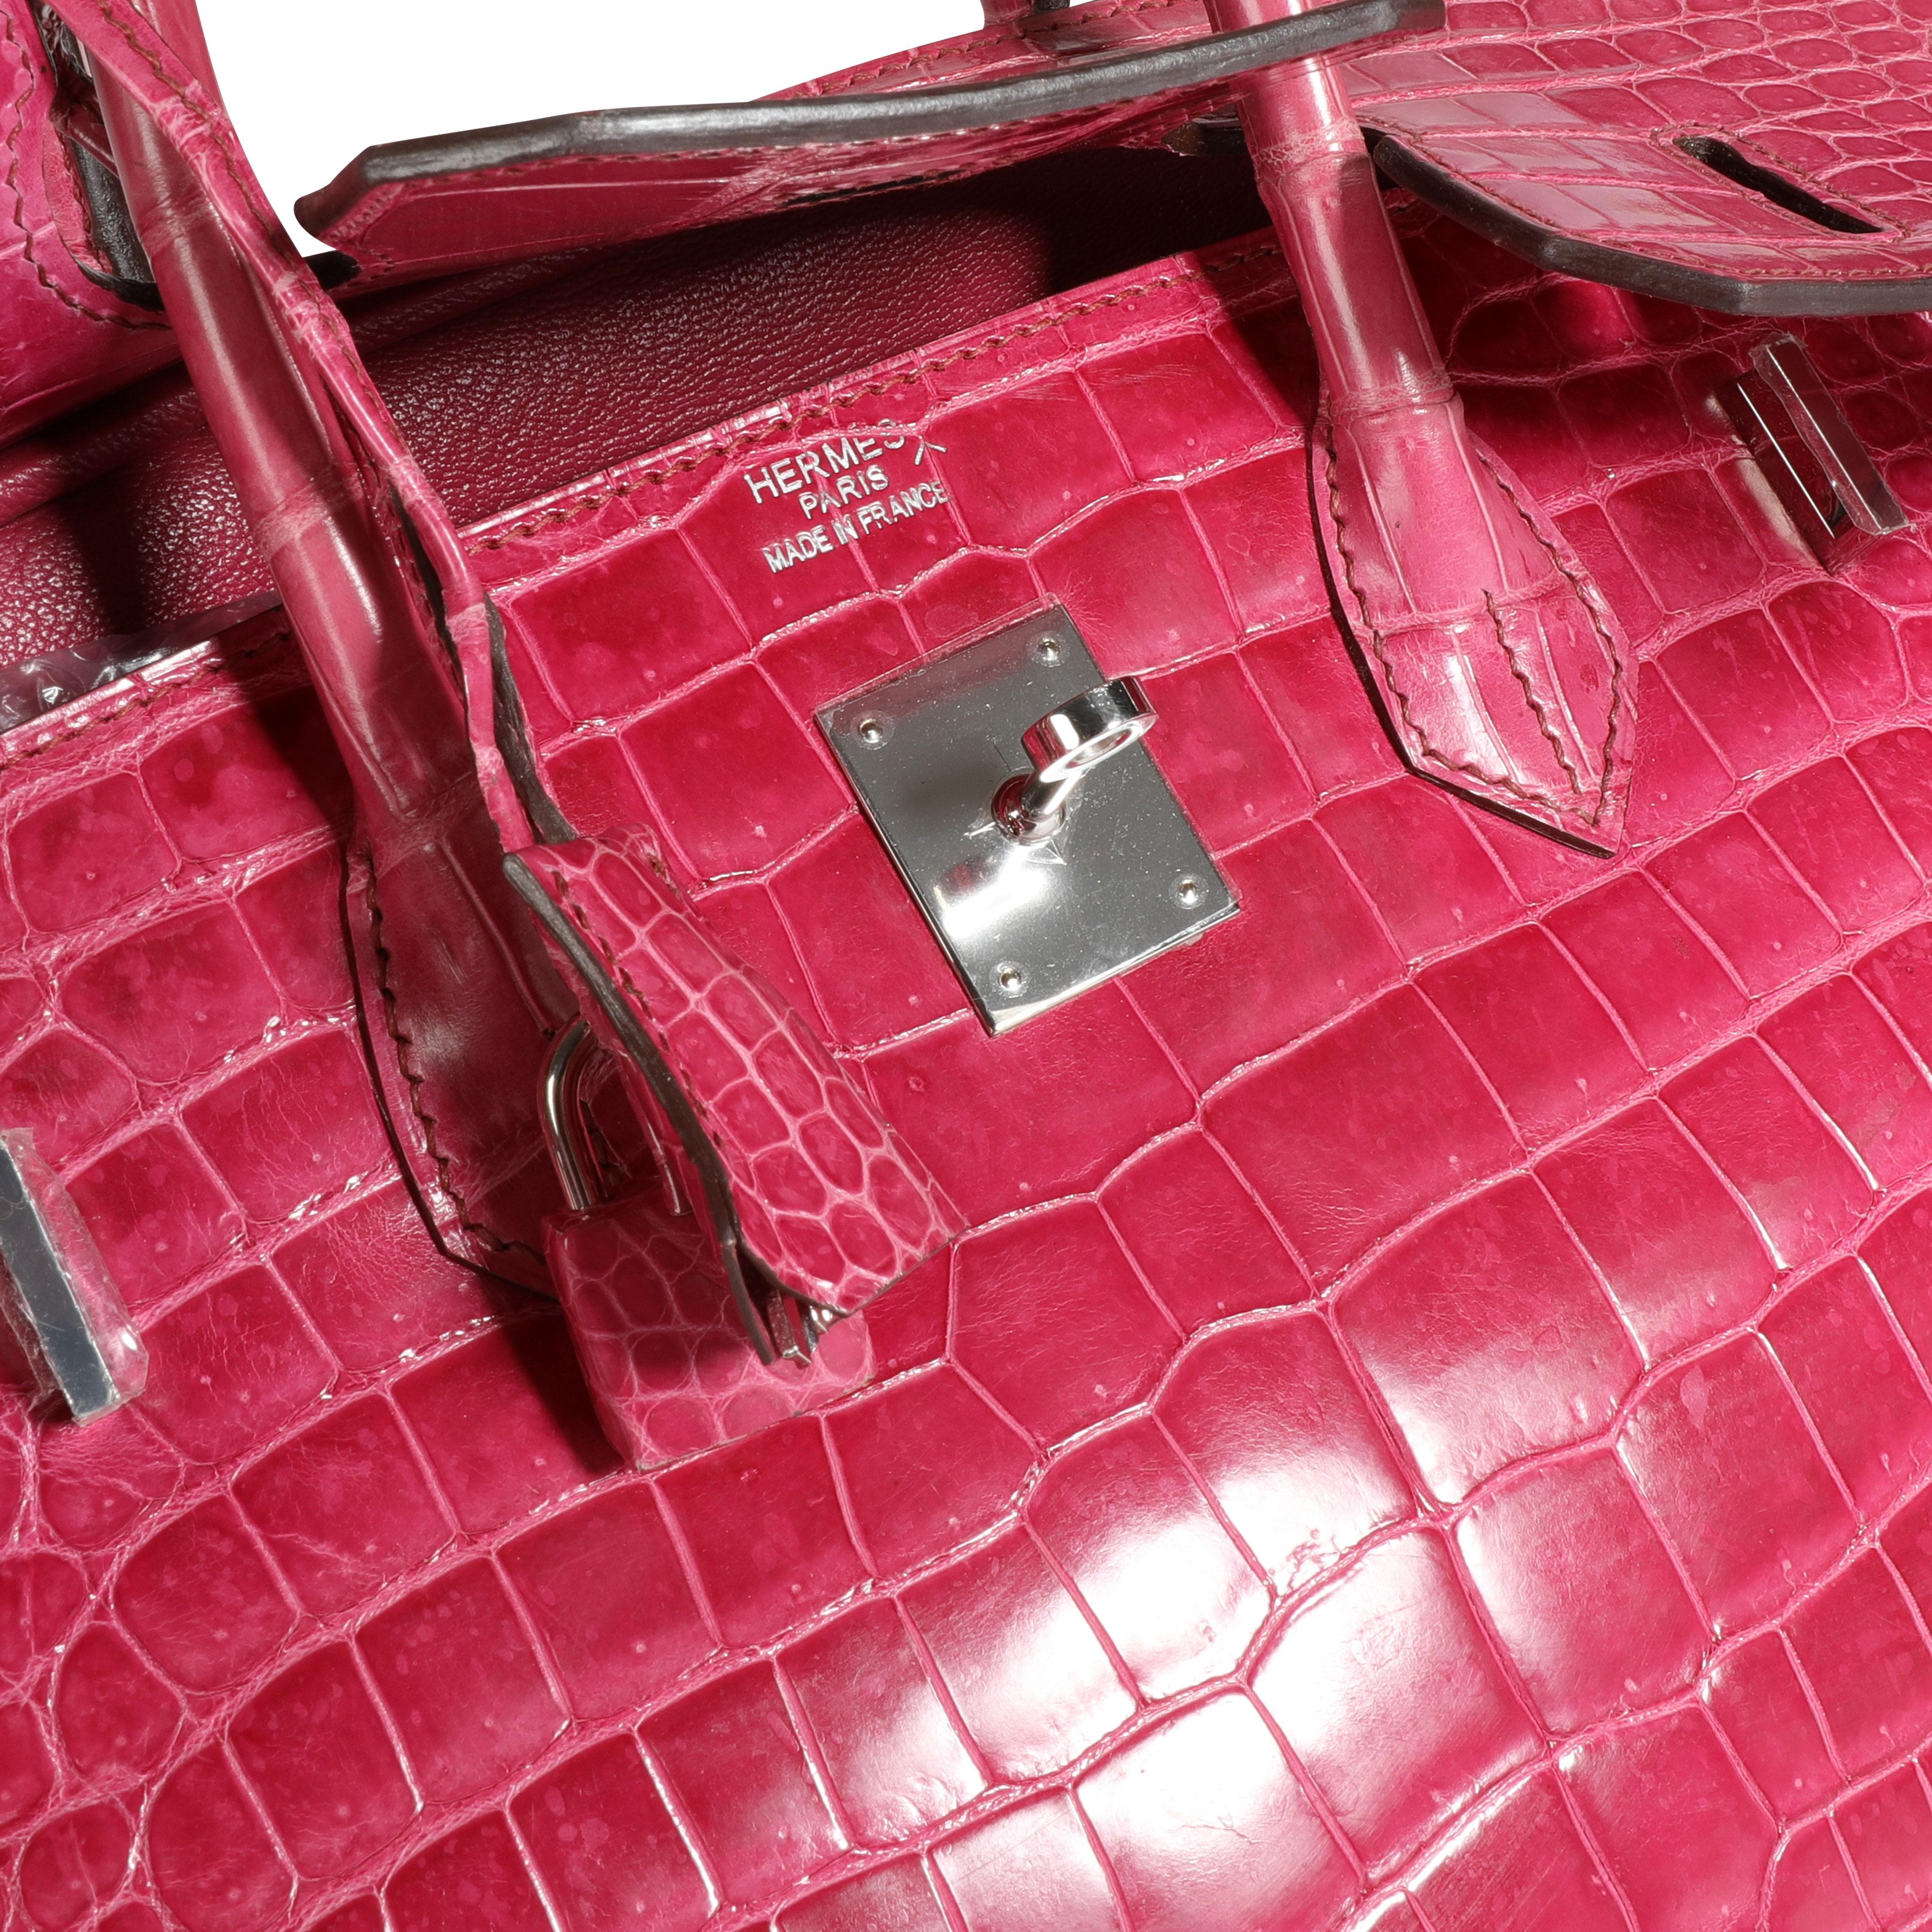 Hermès Rose Scheherazade Glänzend Porosus Krokodil Birkin 35 PHW
SKU: 111440

Zustand der Handtasche: Sehr gut
Bemerkungen zum Zustand: Sehr guter Zustand. Kunststoff an der Hardware. Nachdunkeln der Griffe. Abschürfungen an den Ecken. Kratzen an